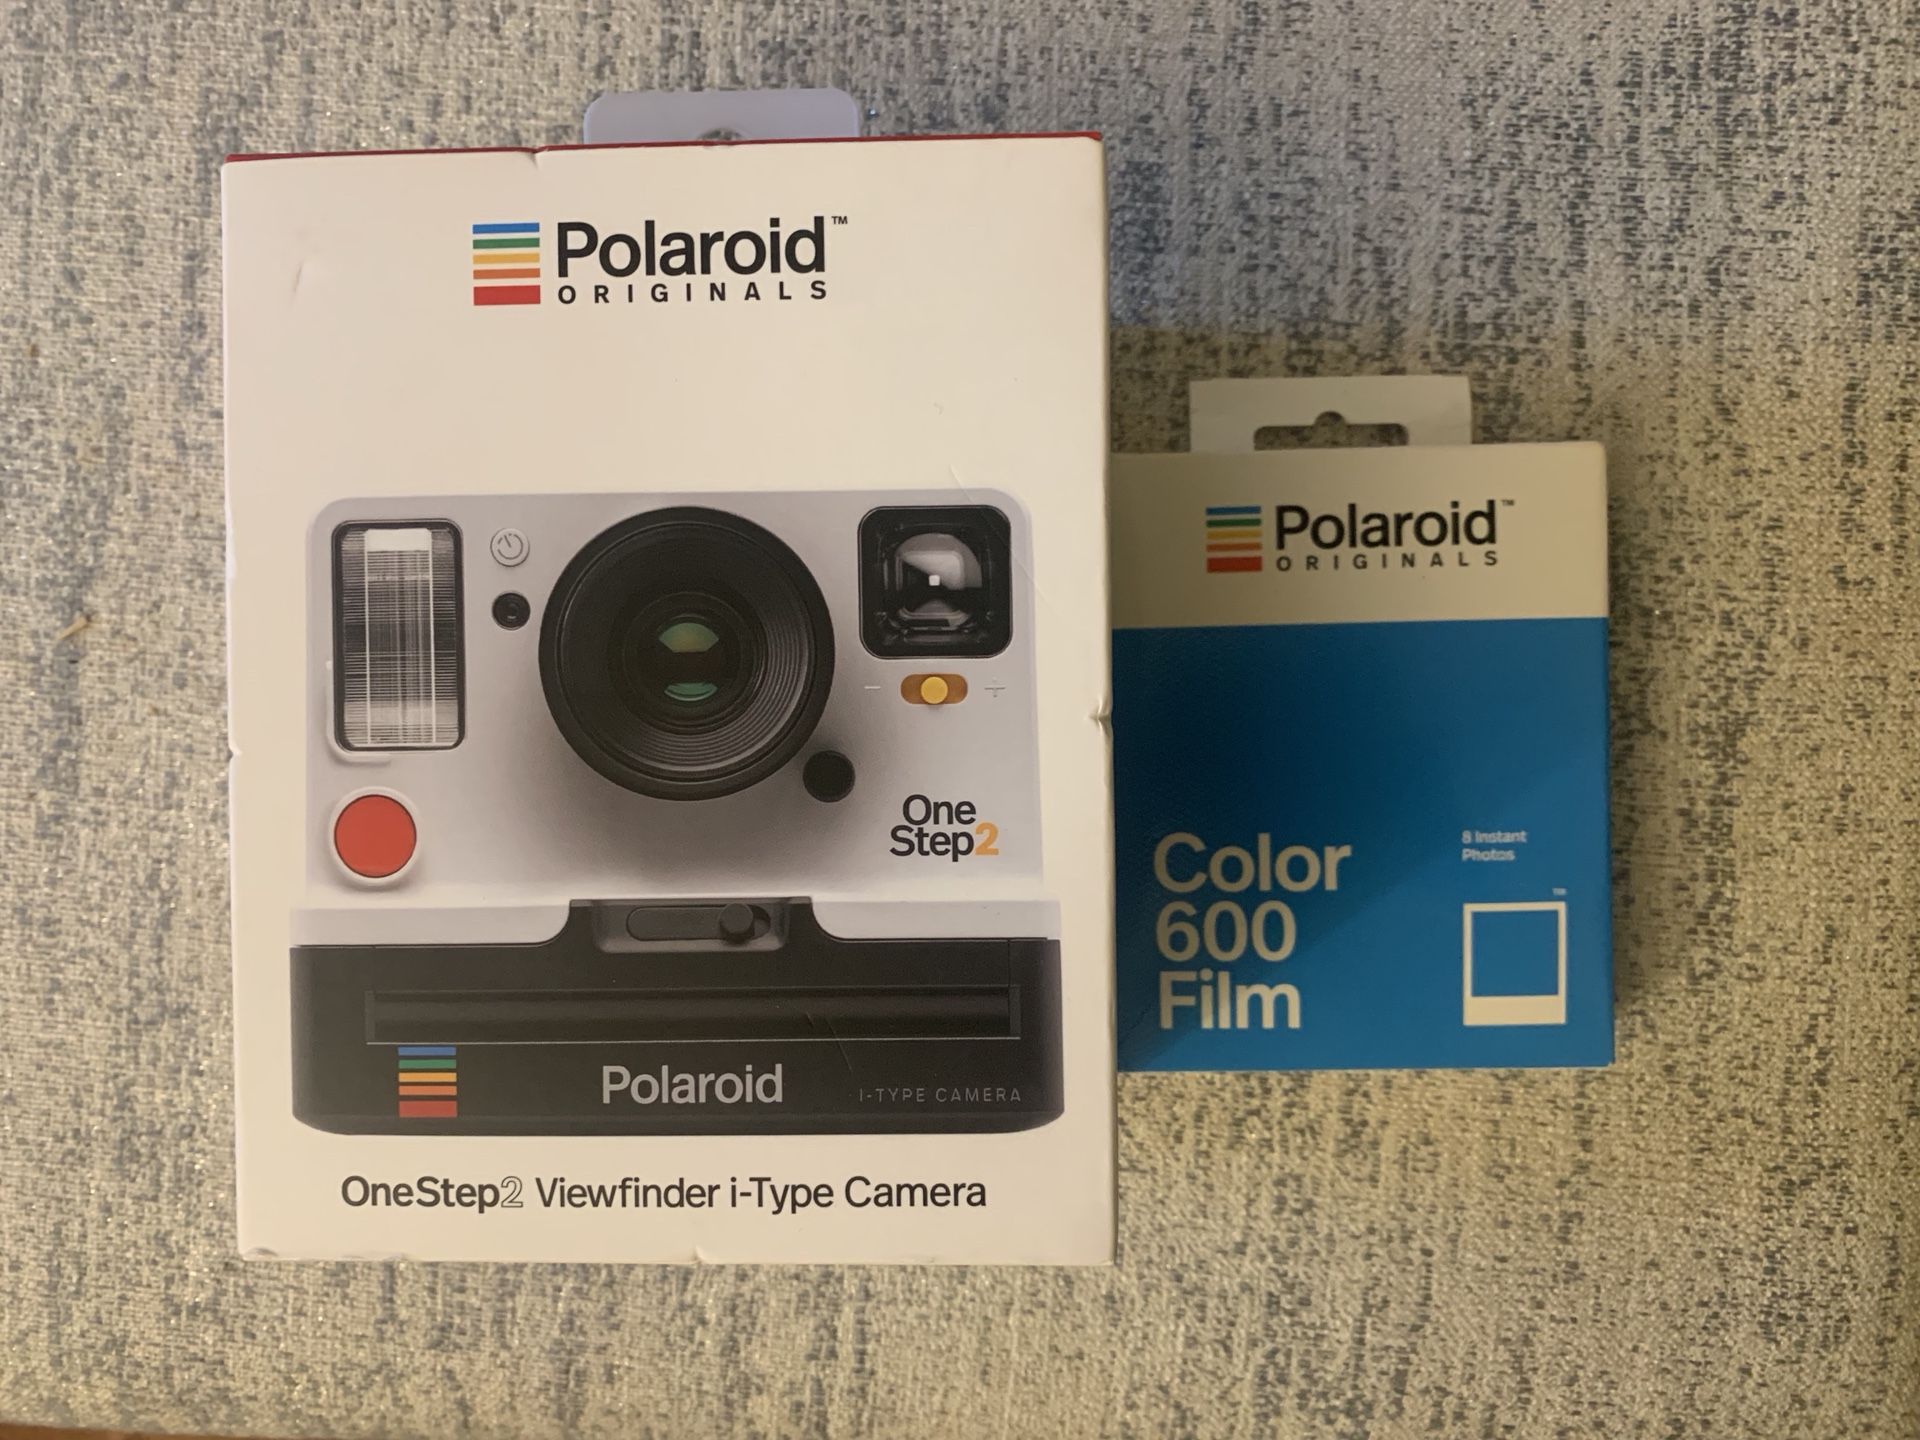 New Polaroid originals and film